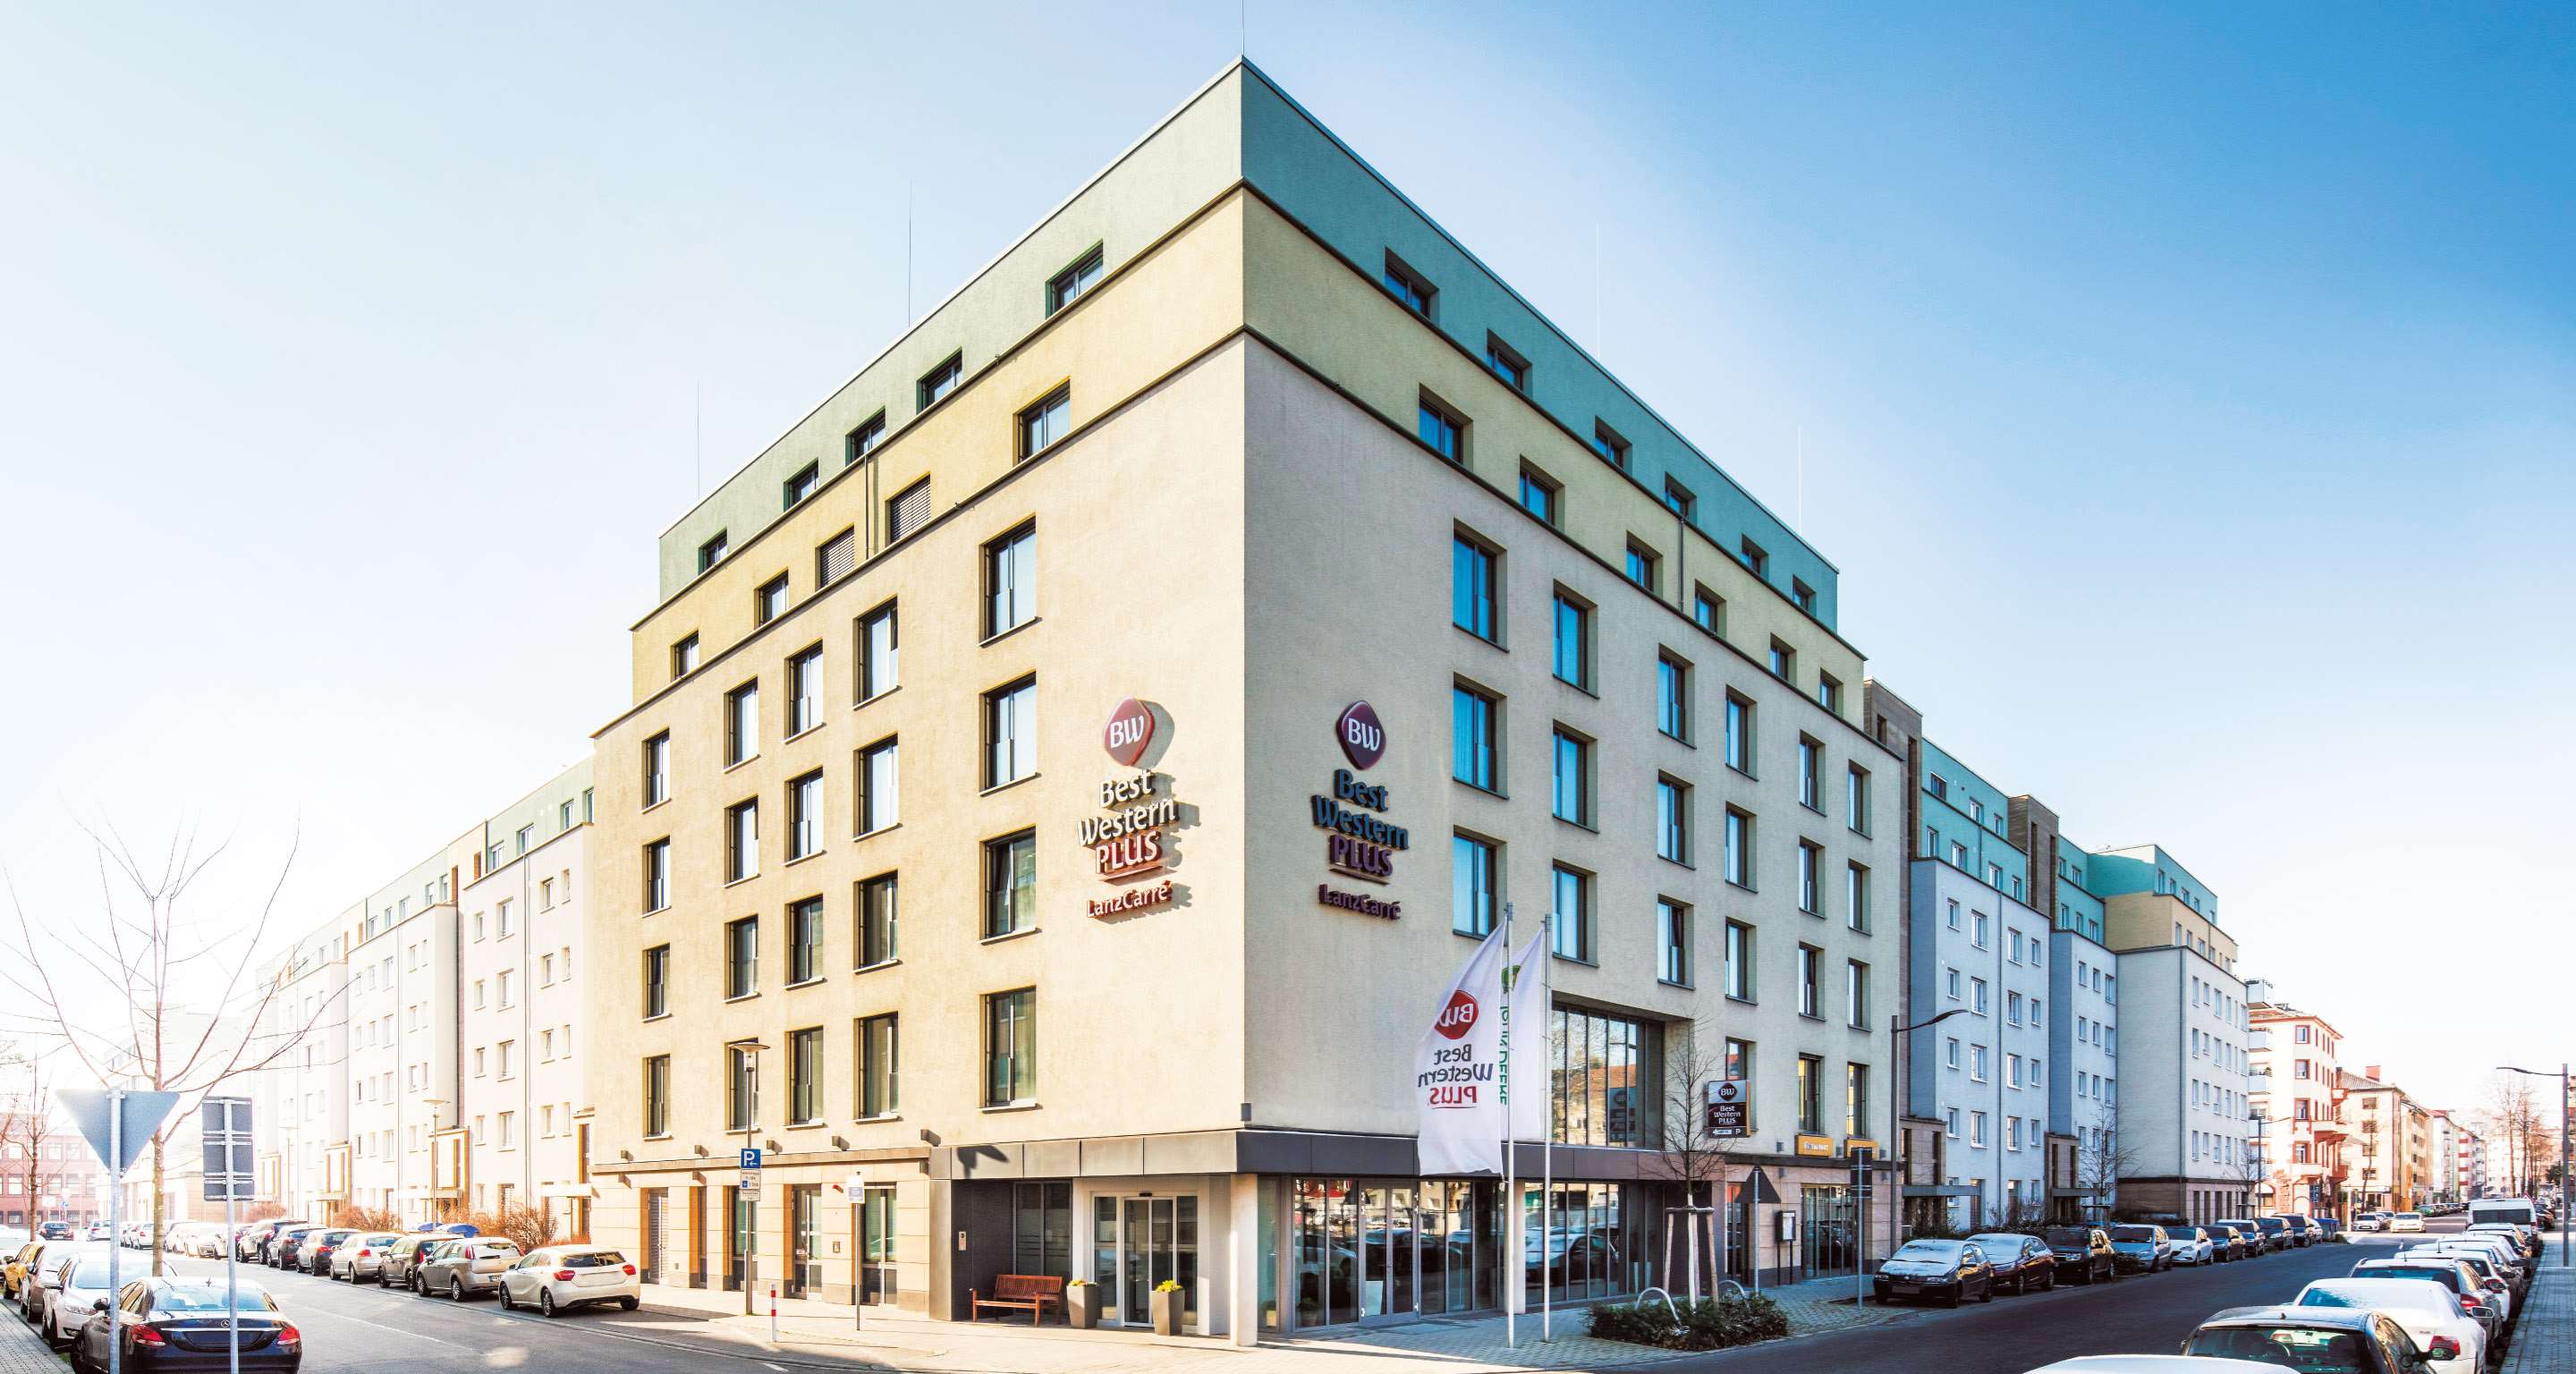 Best Western Plus Hotel Lanzcarre, Heinz-Haber-Strasse 2 in Mannheim